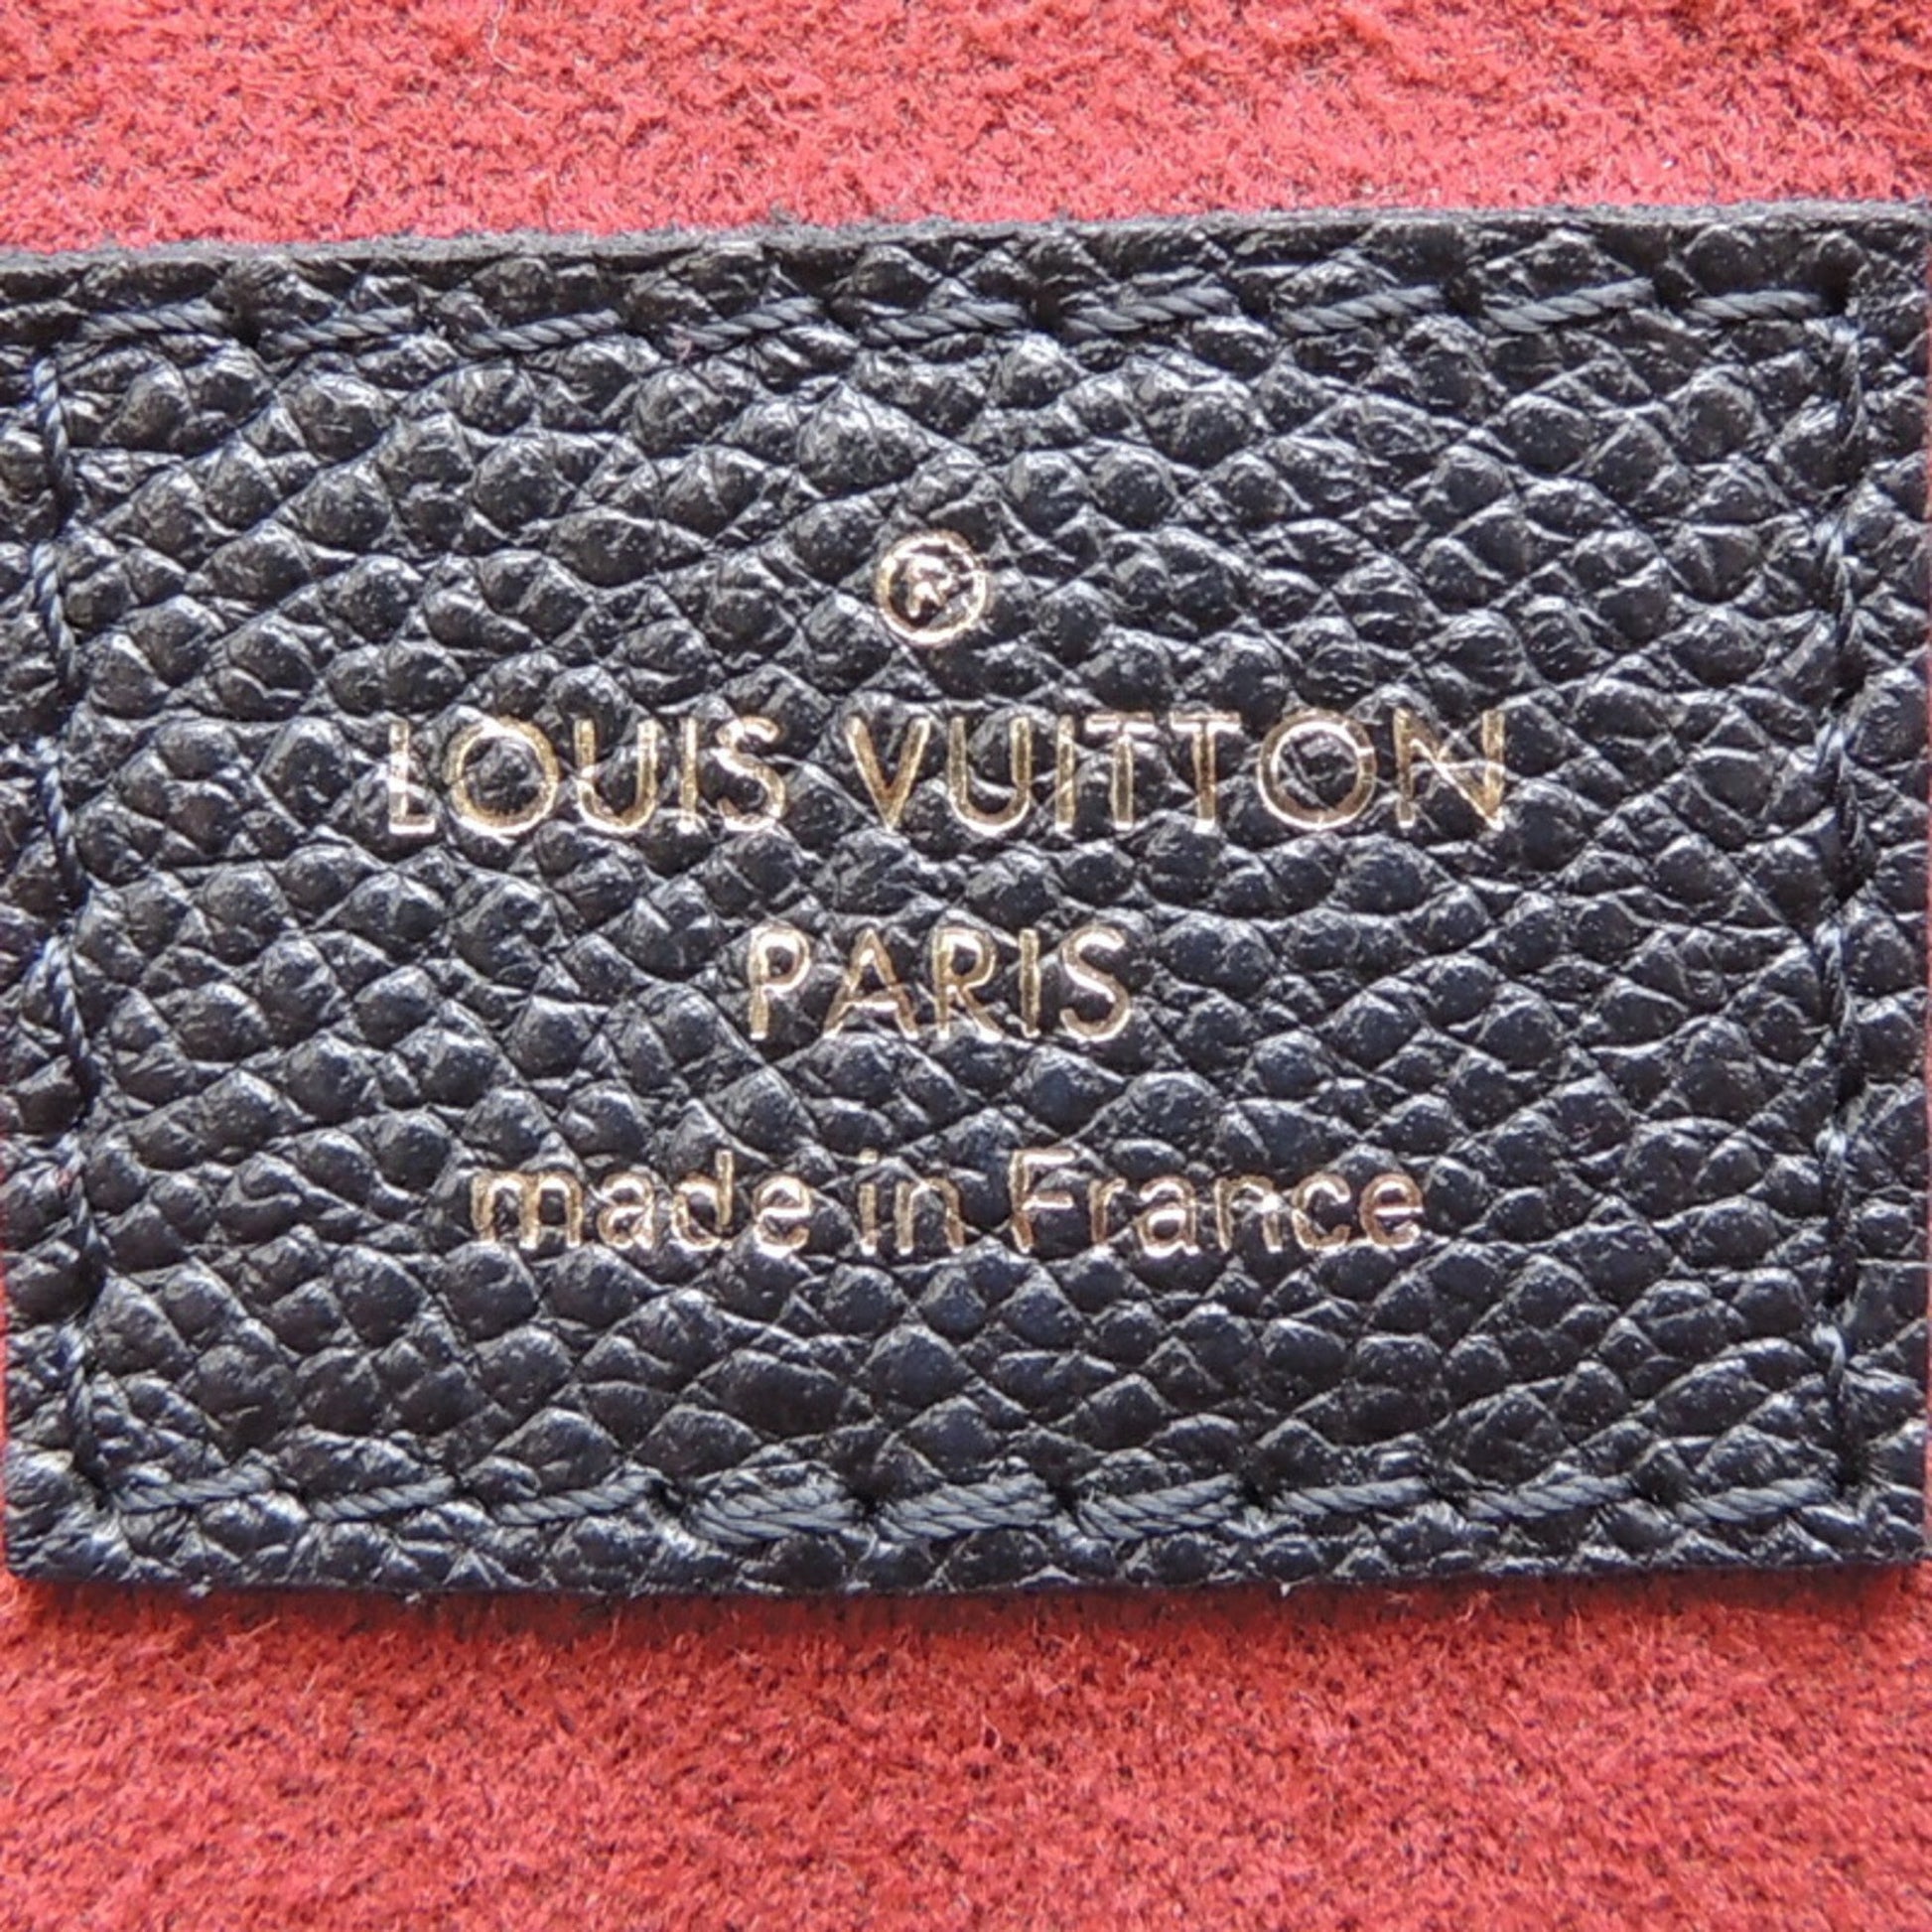 LOUIS VUITTON Boétie PM Monogram. Size